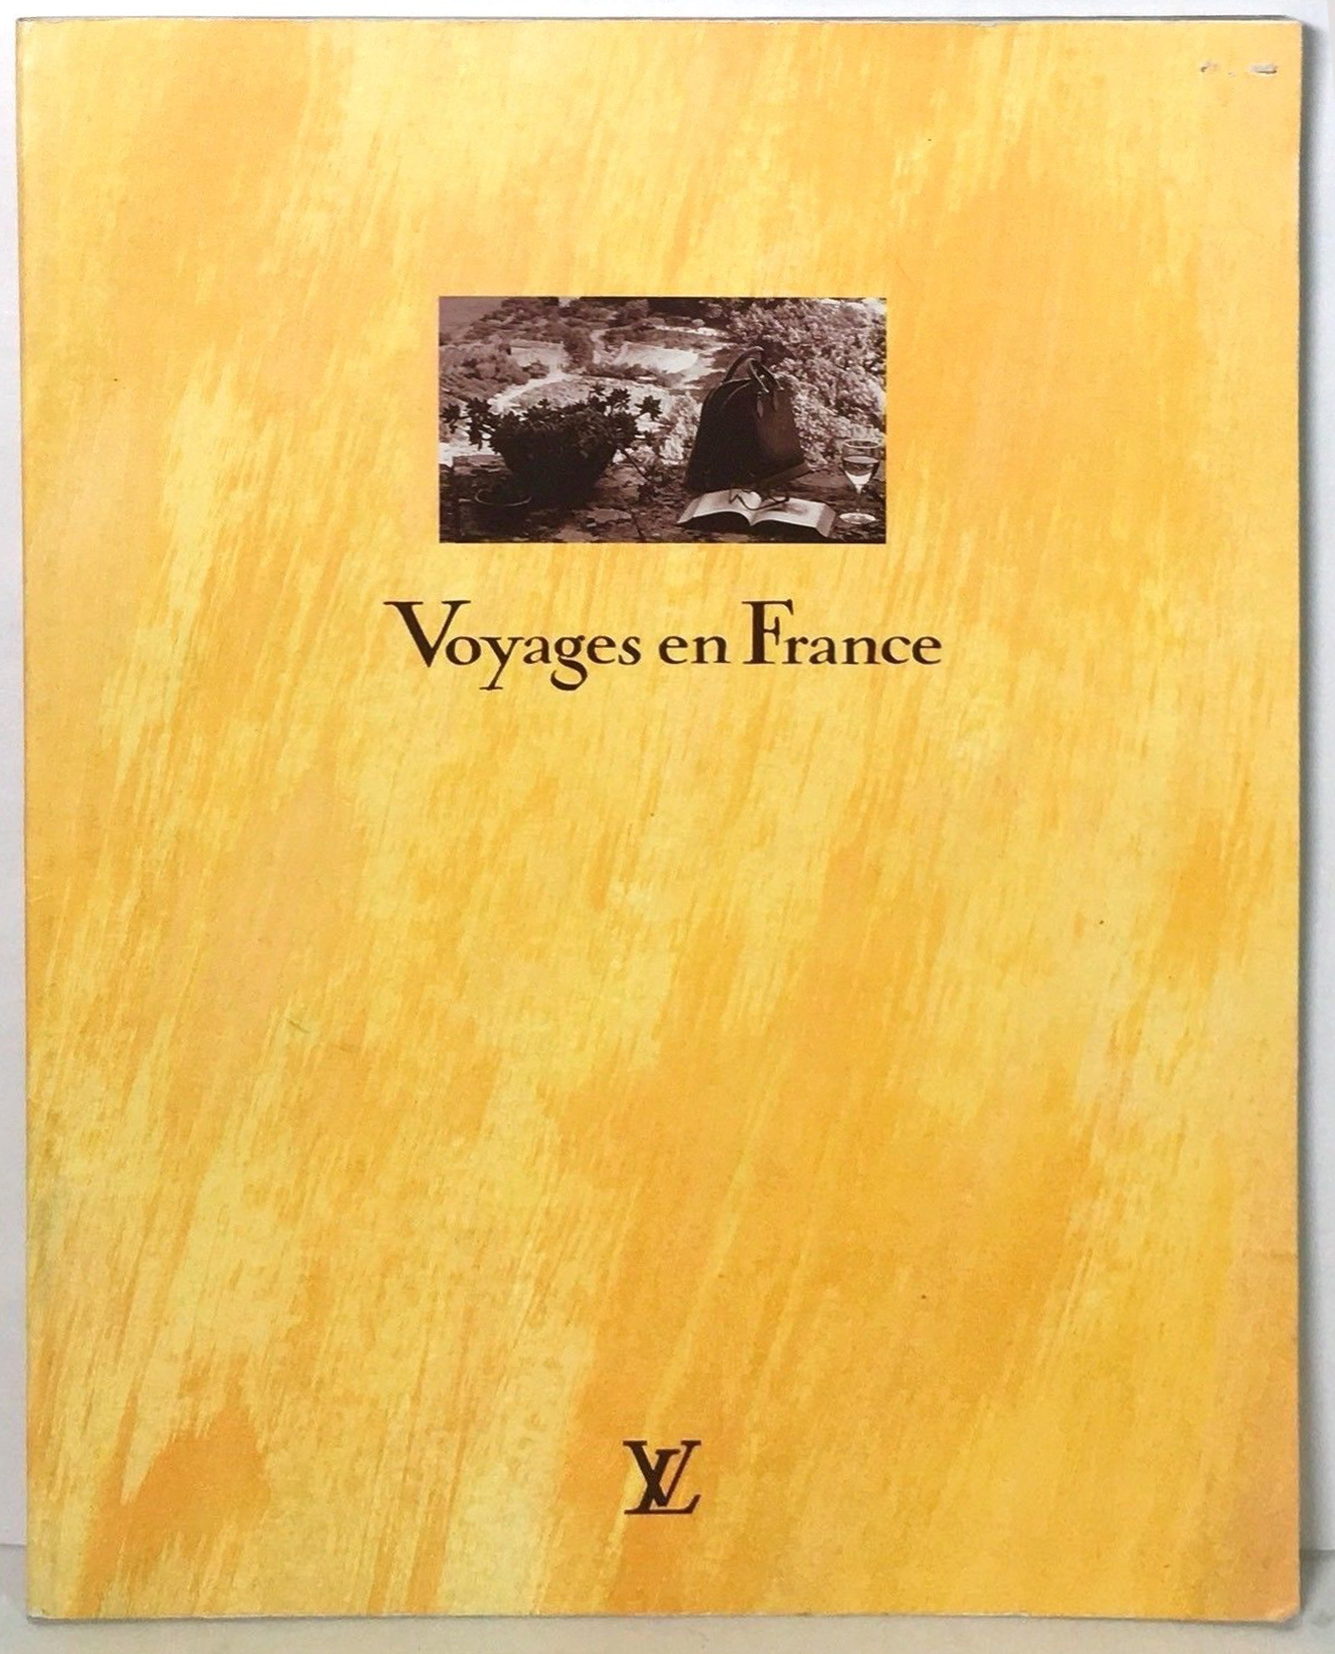 Louis Vuitton Paris Le Voyages en France Accessories Catalog Maroquinerie Men Women Cover Collection photos Monogram Canvas Cuir Leather Trunks Handbags Travel Luxury 1993